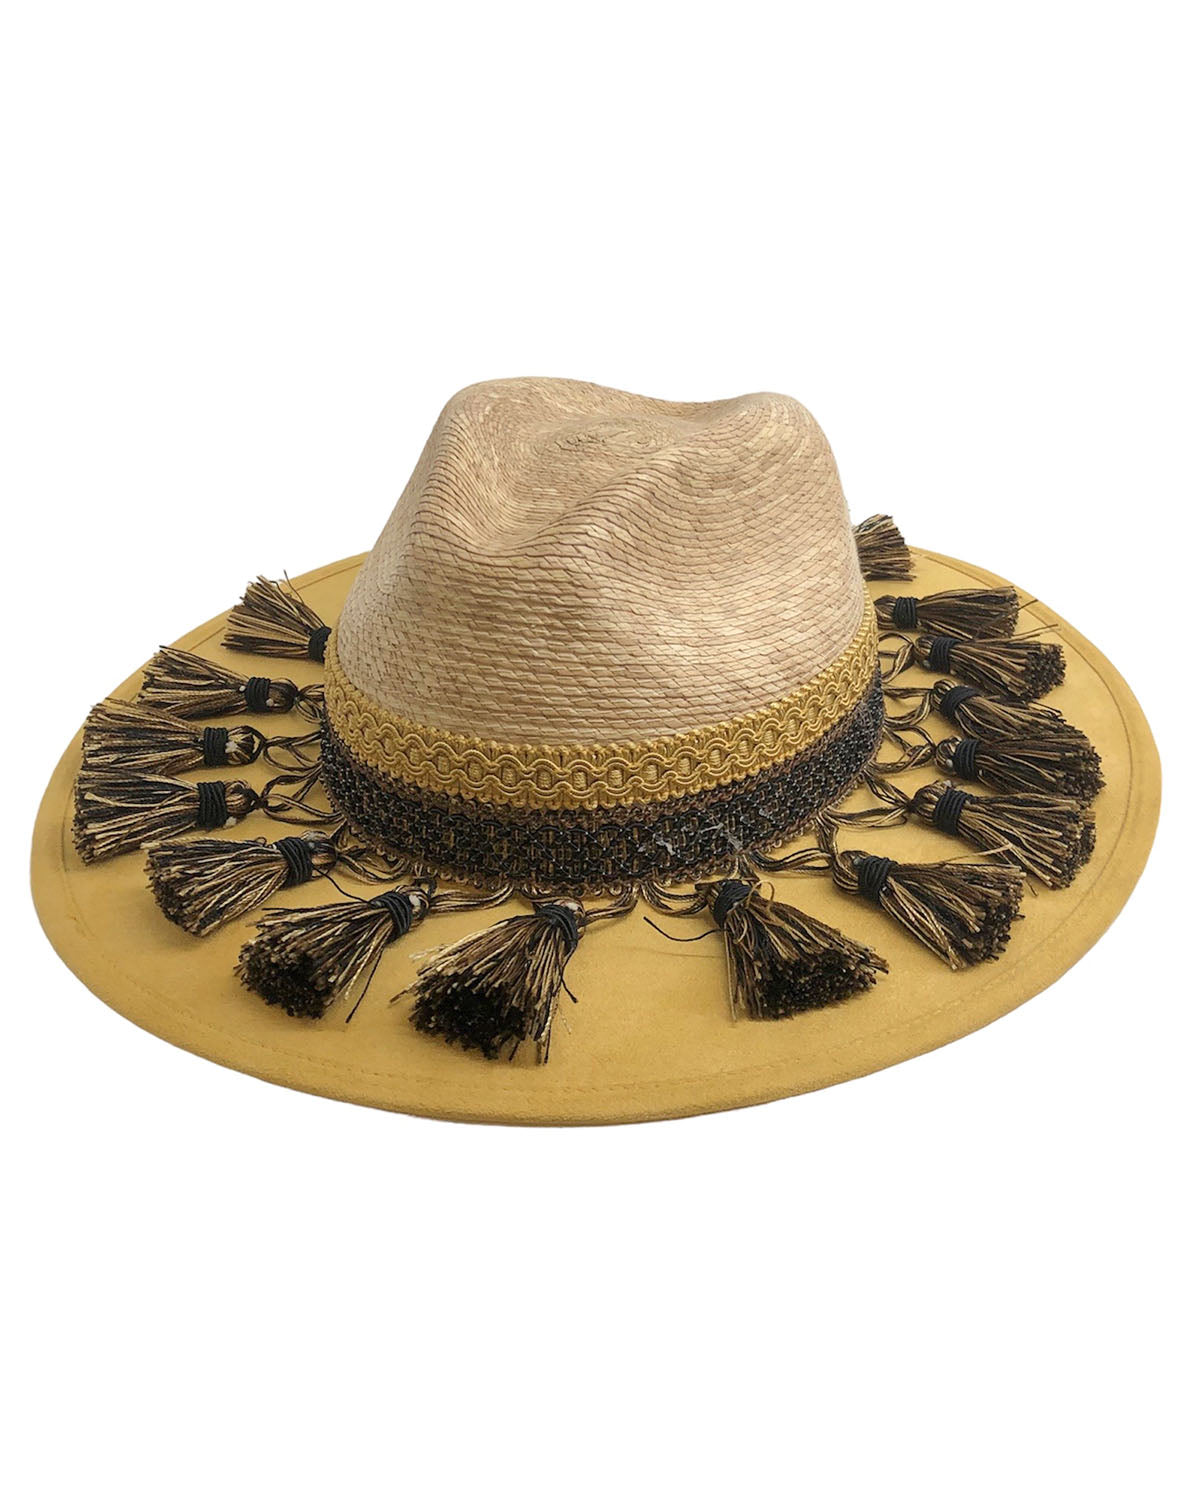 Sombrero country palma/ante color amarillo con borlas negro/bei talla G